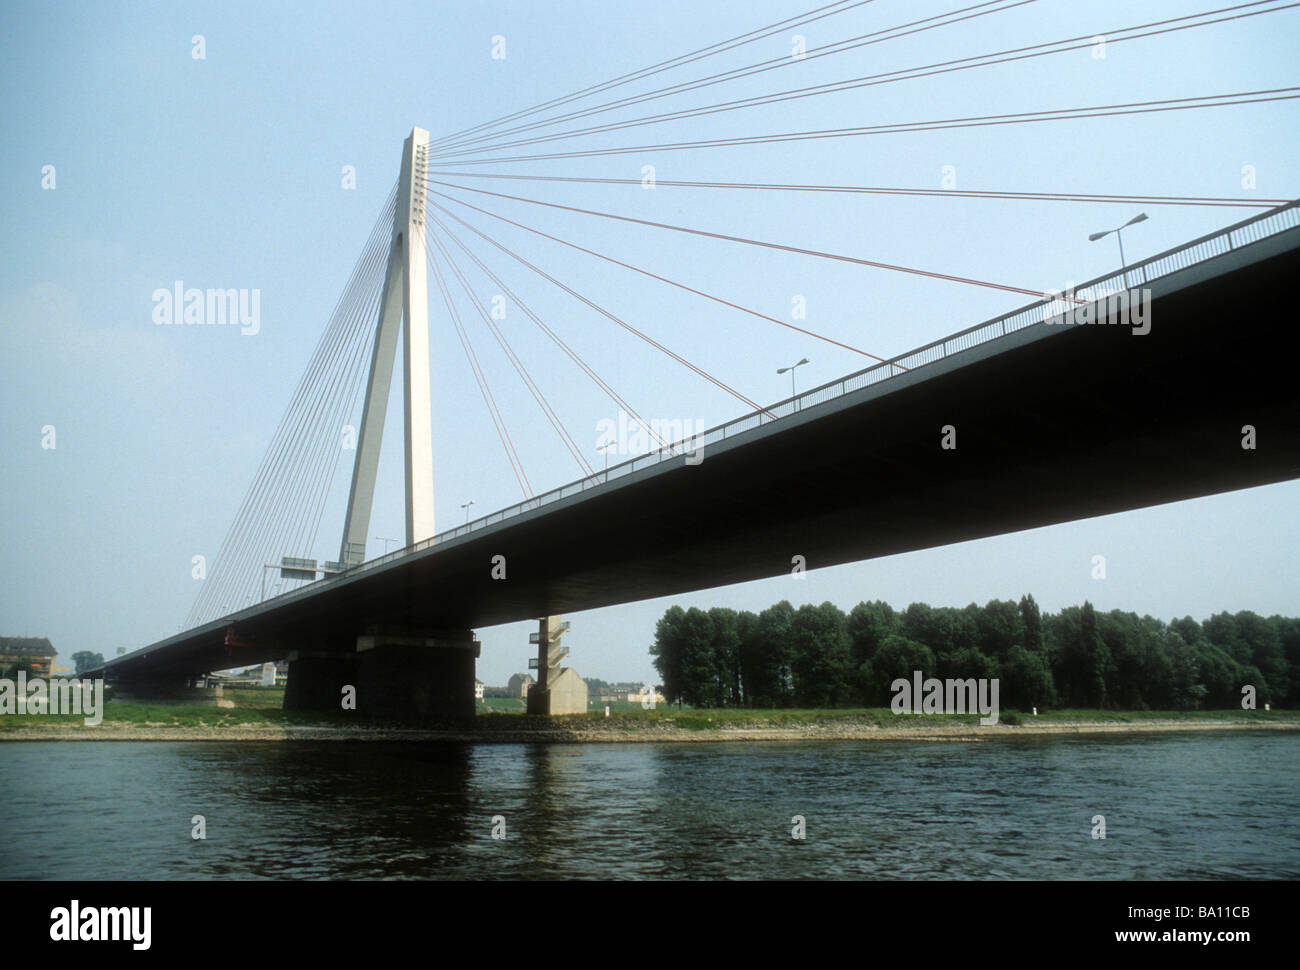 Kabel bleiben Brücke Neuwied Deutschland Rhein Fluss Turm Wasser Struktur  stark Stahltransport Autobahn Remagen Stockfotografie - Alamy